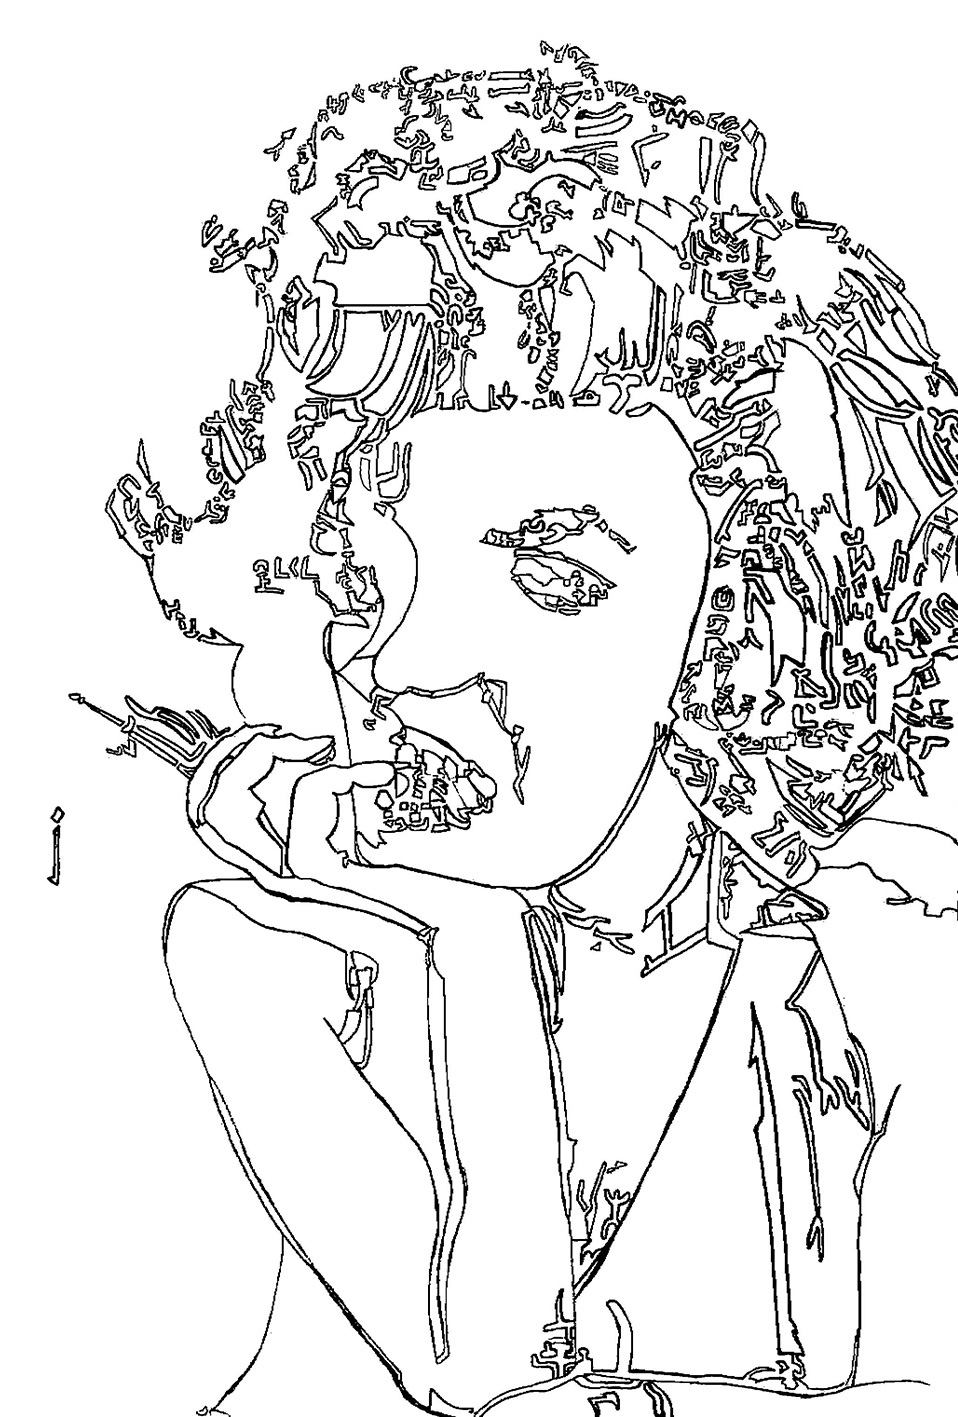 【絵】raitoさんによるマリリン・モンローを描いた線画